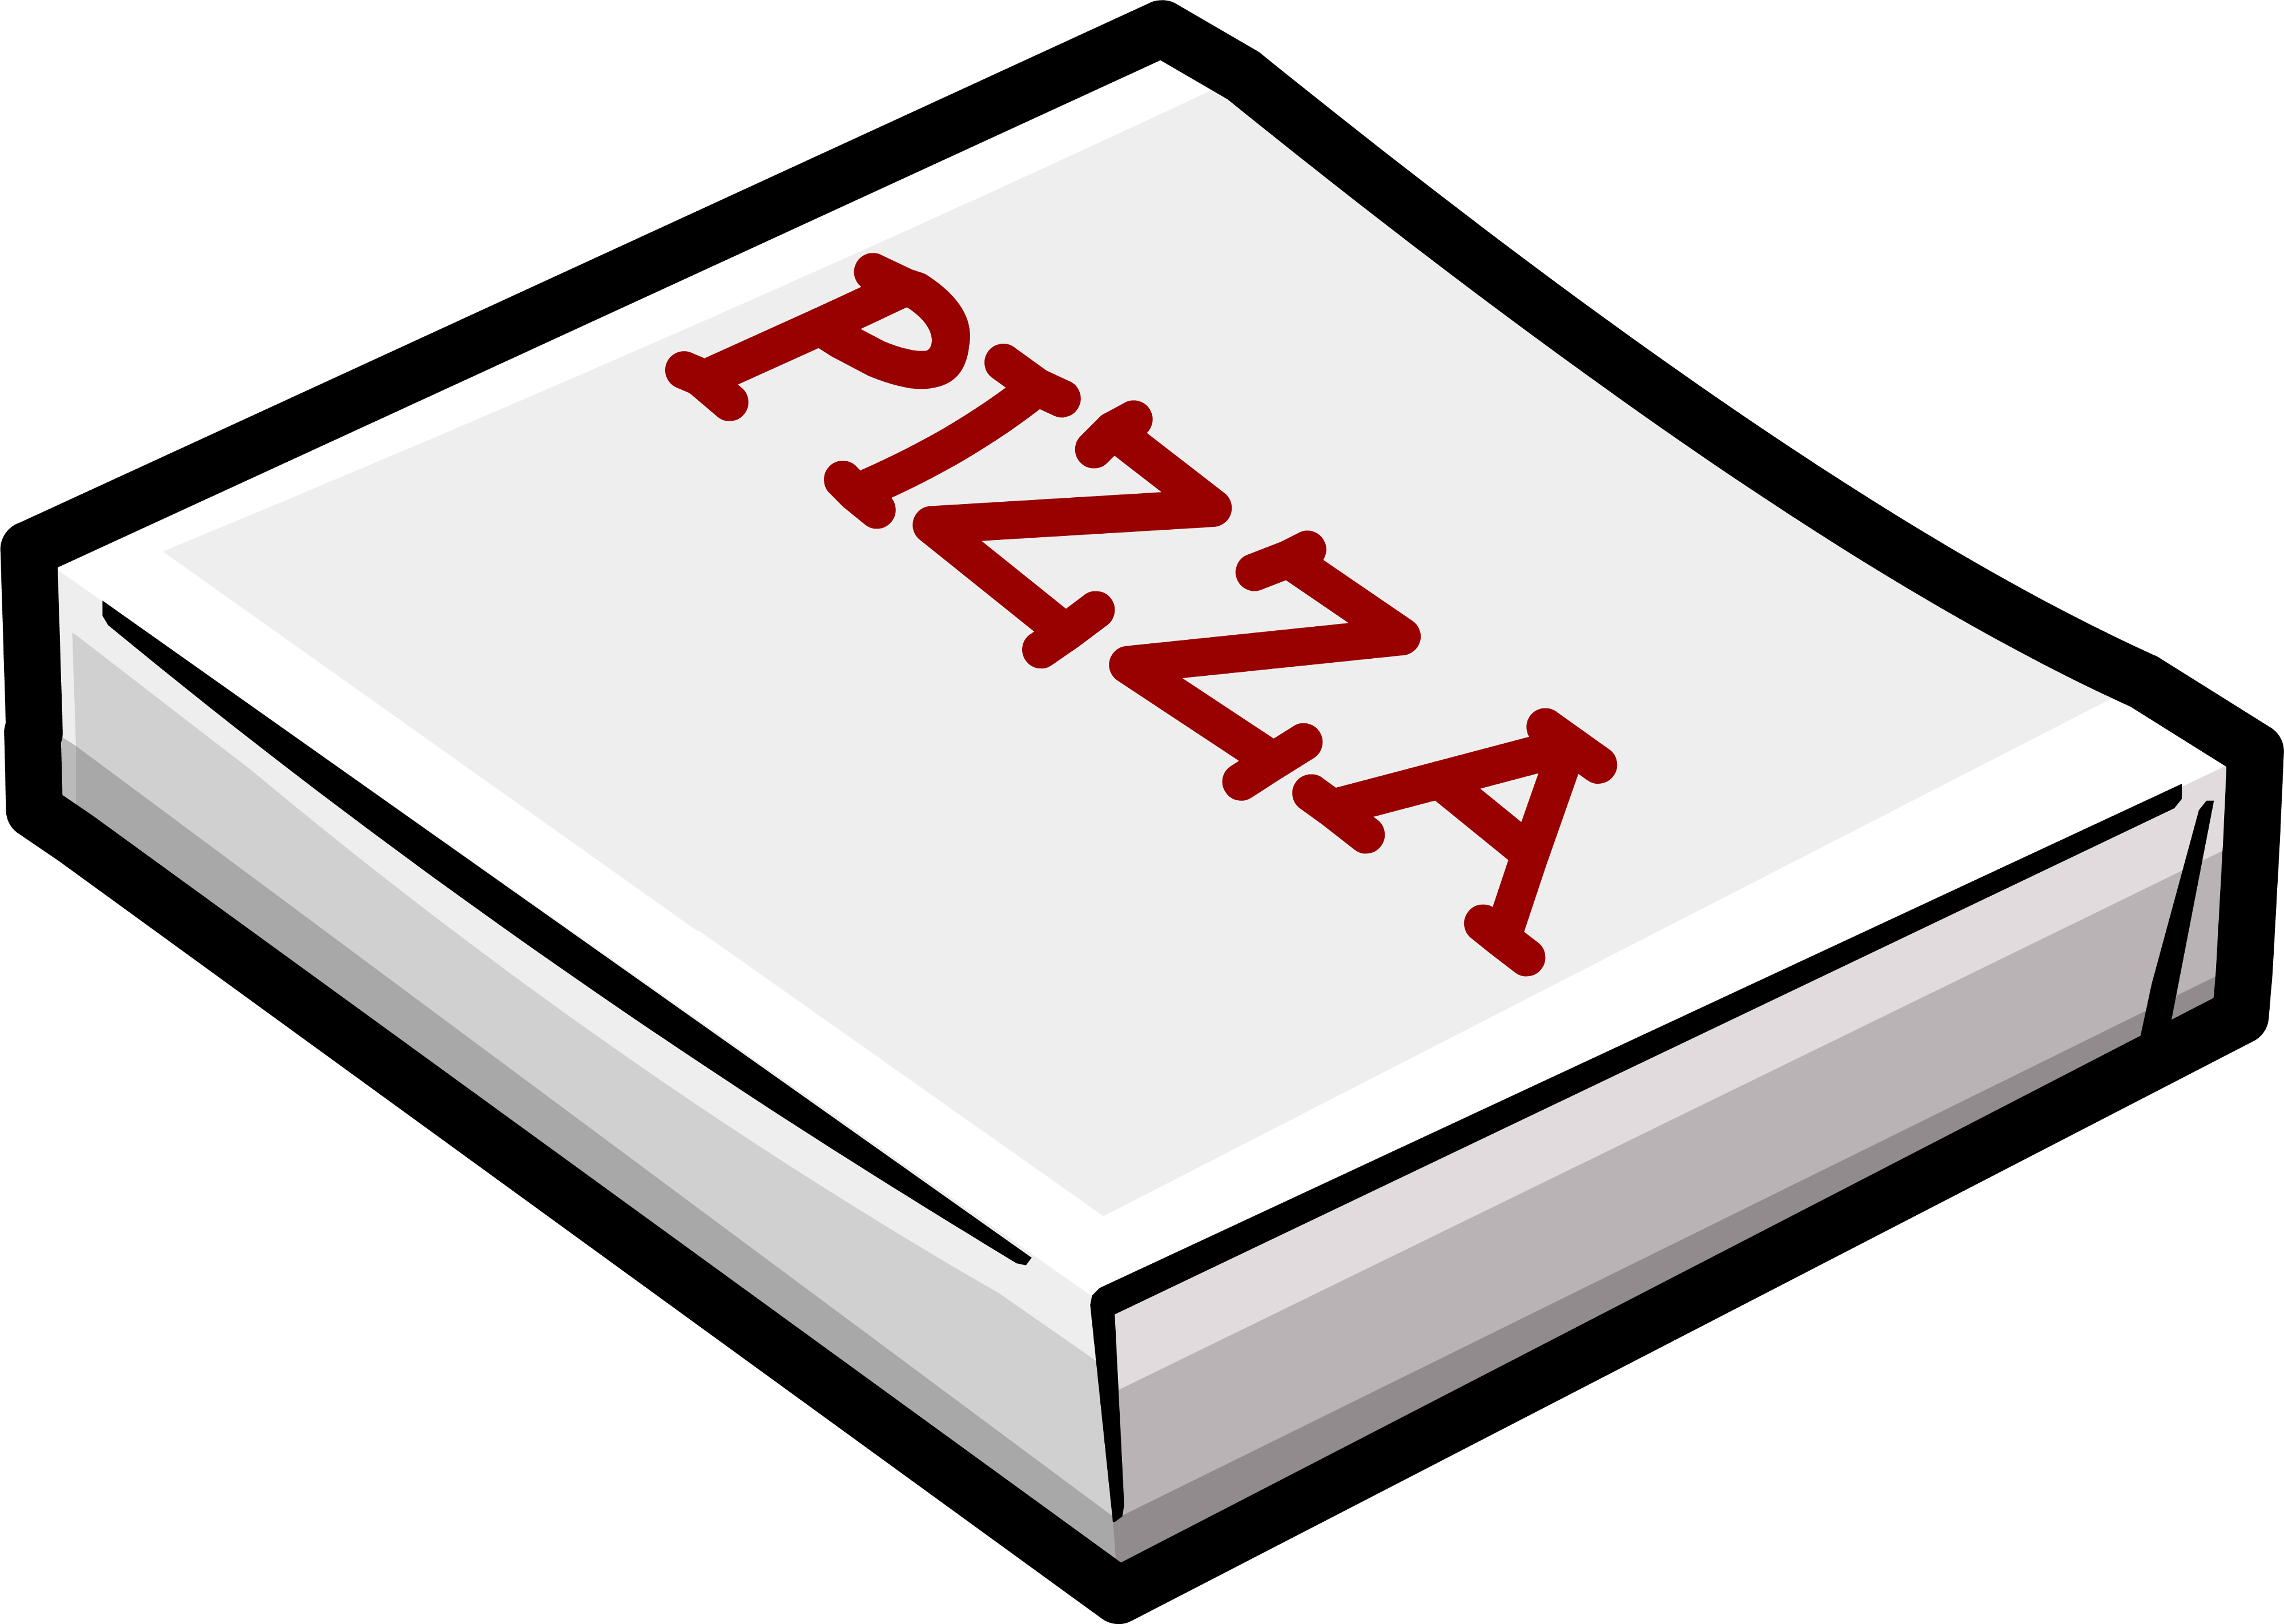 pizza logos clip art - photo #48